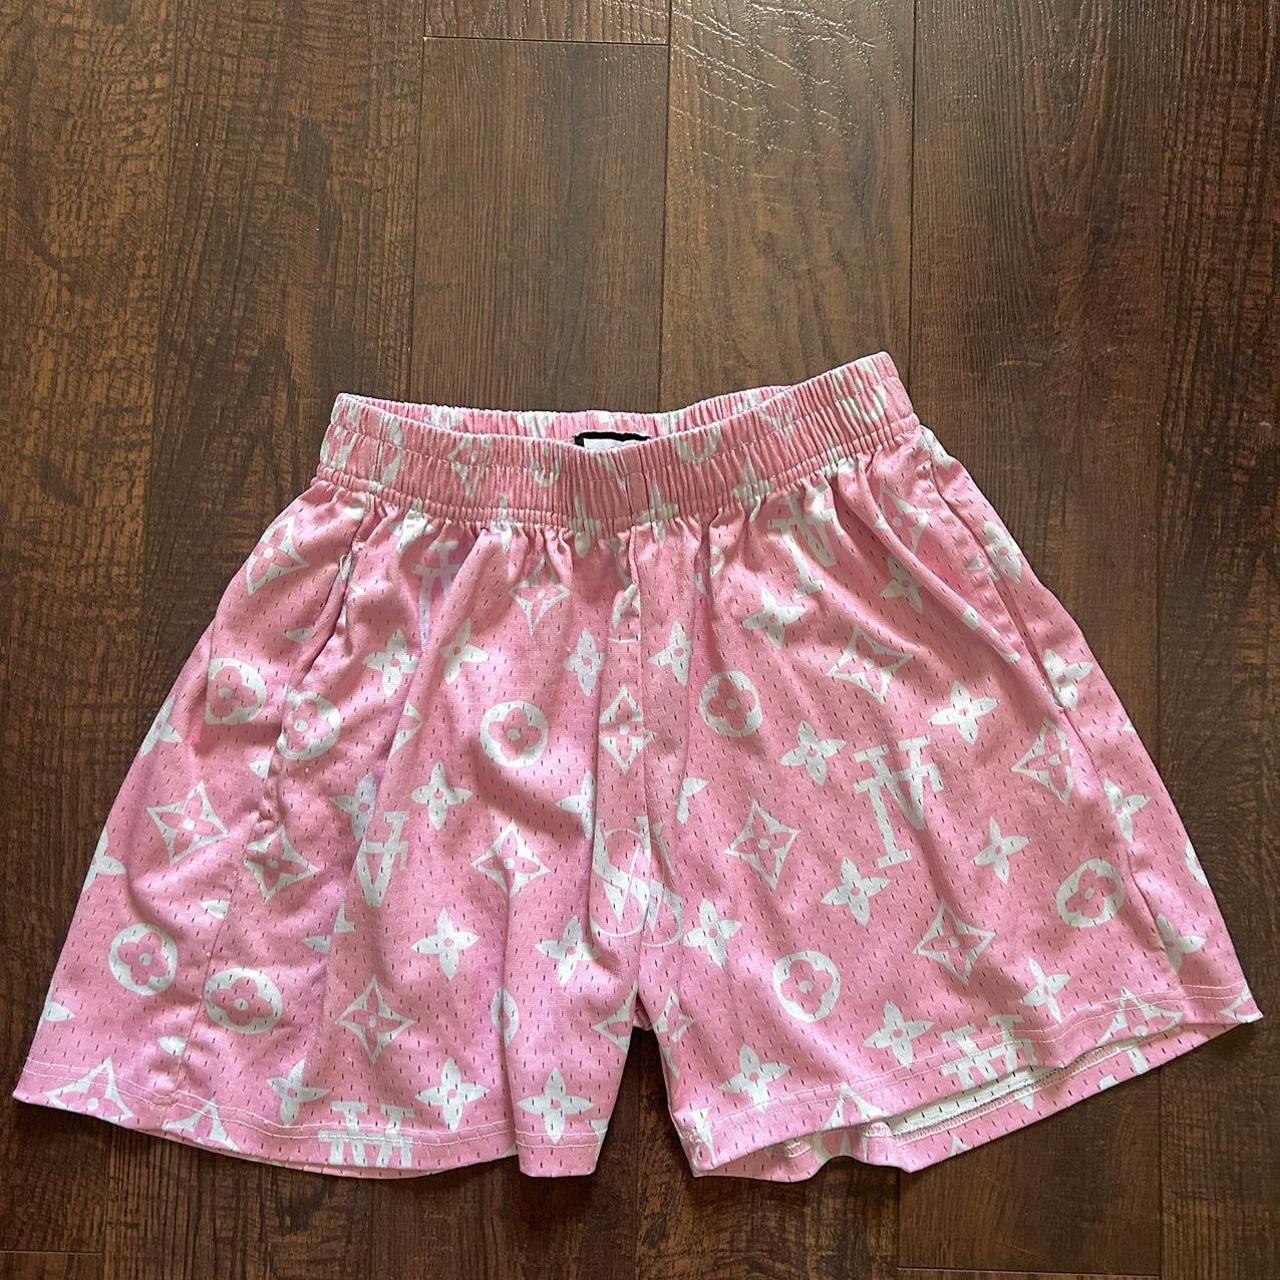 pink louis vuitton shorts 5 in seam - Depop